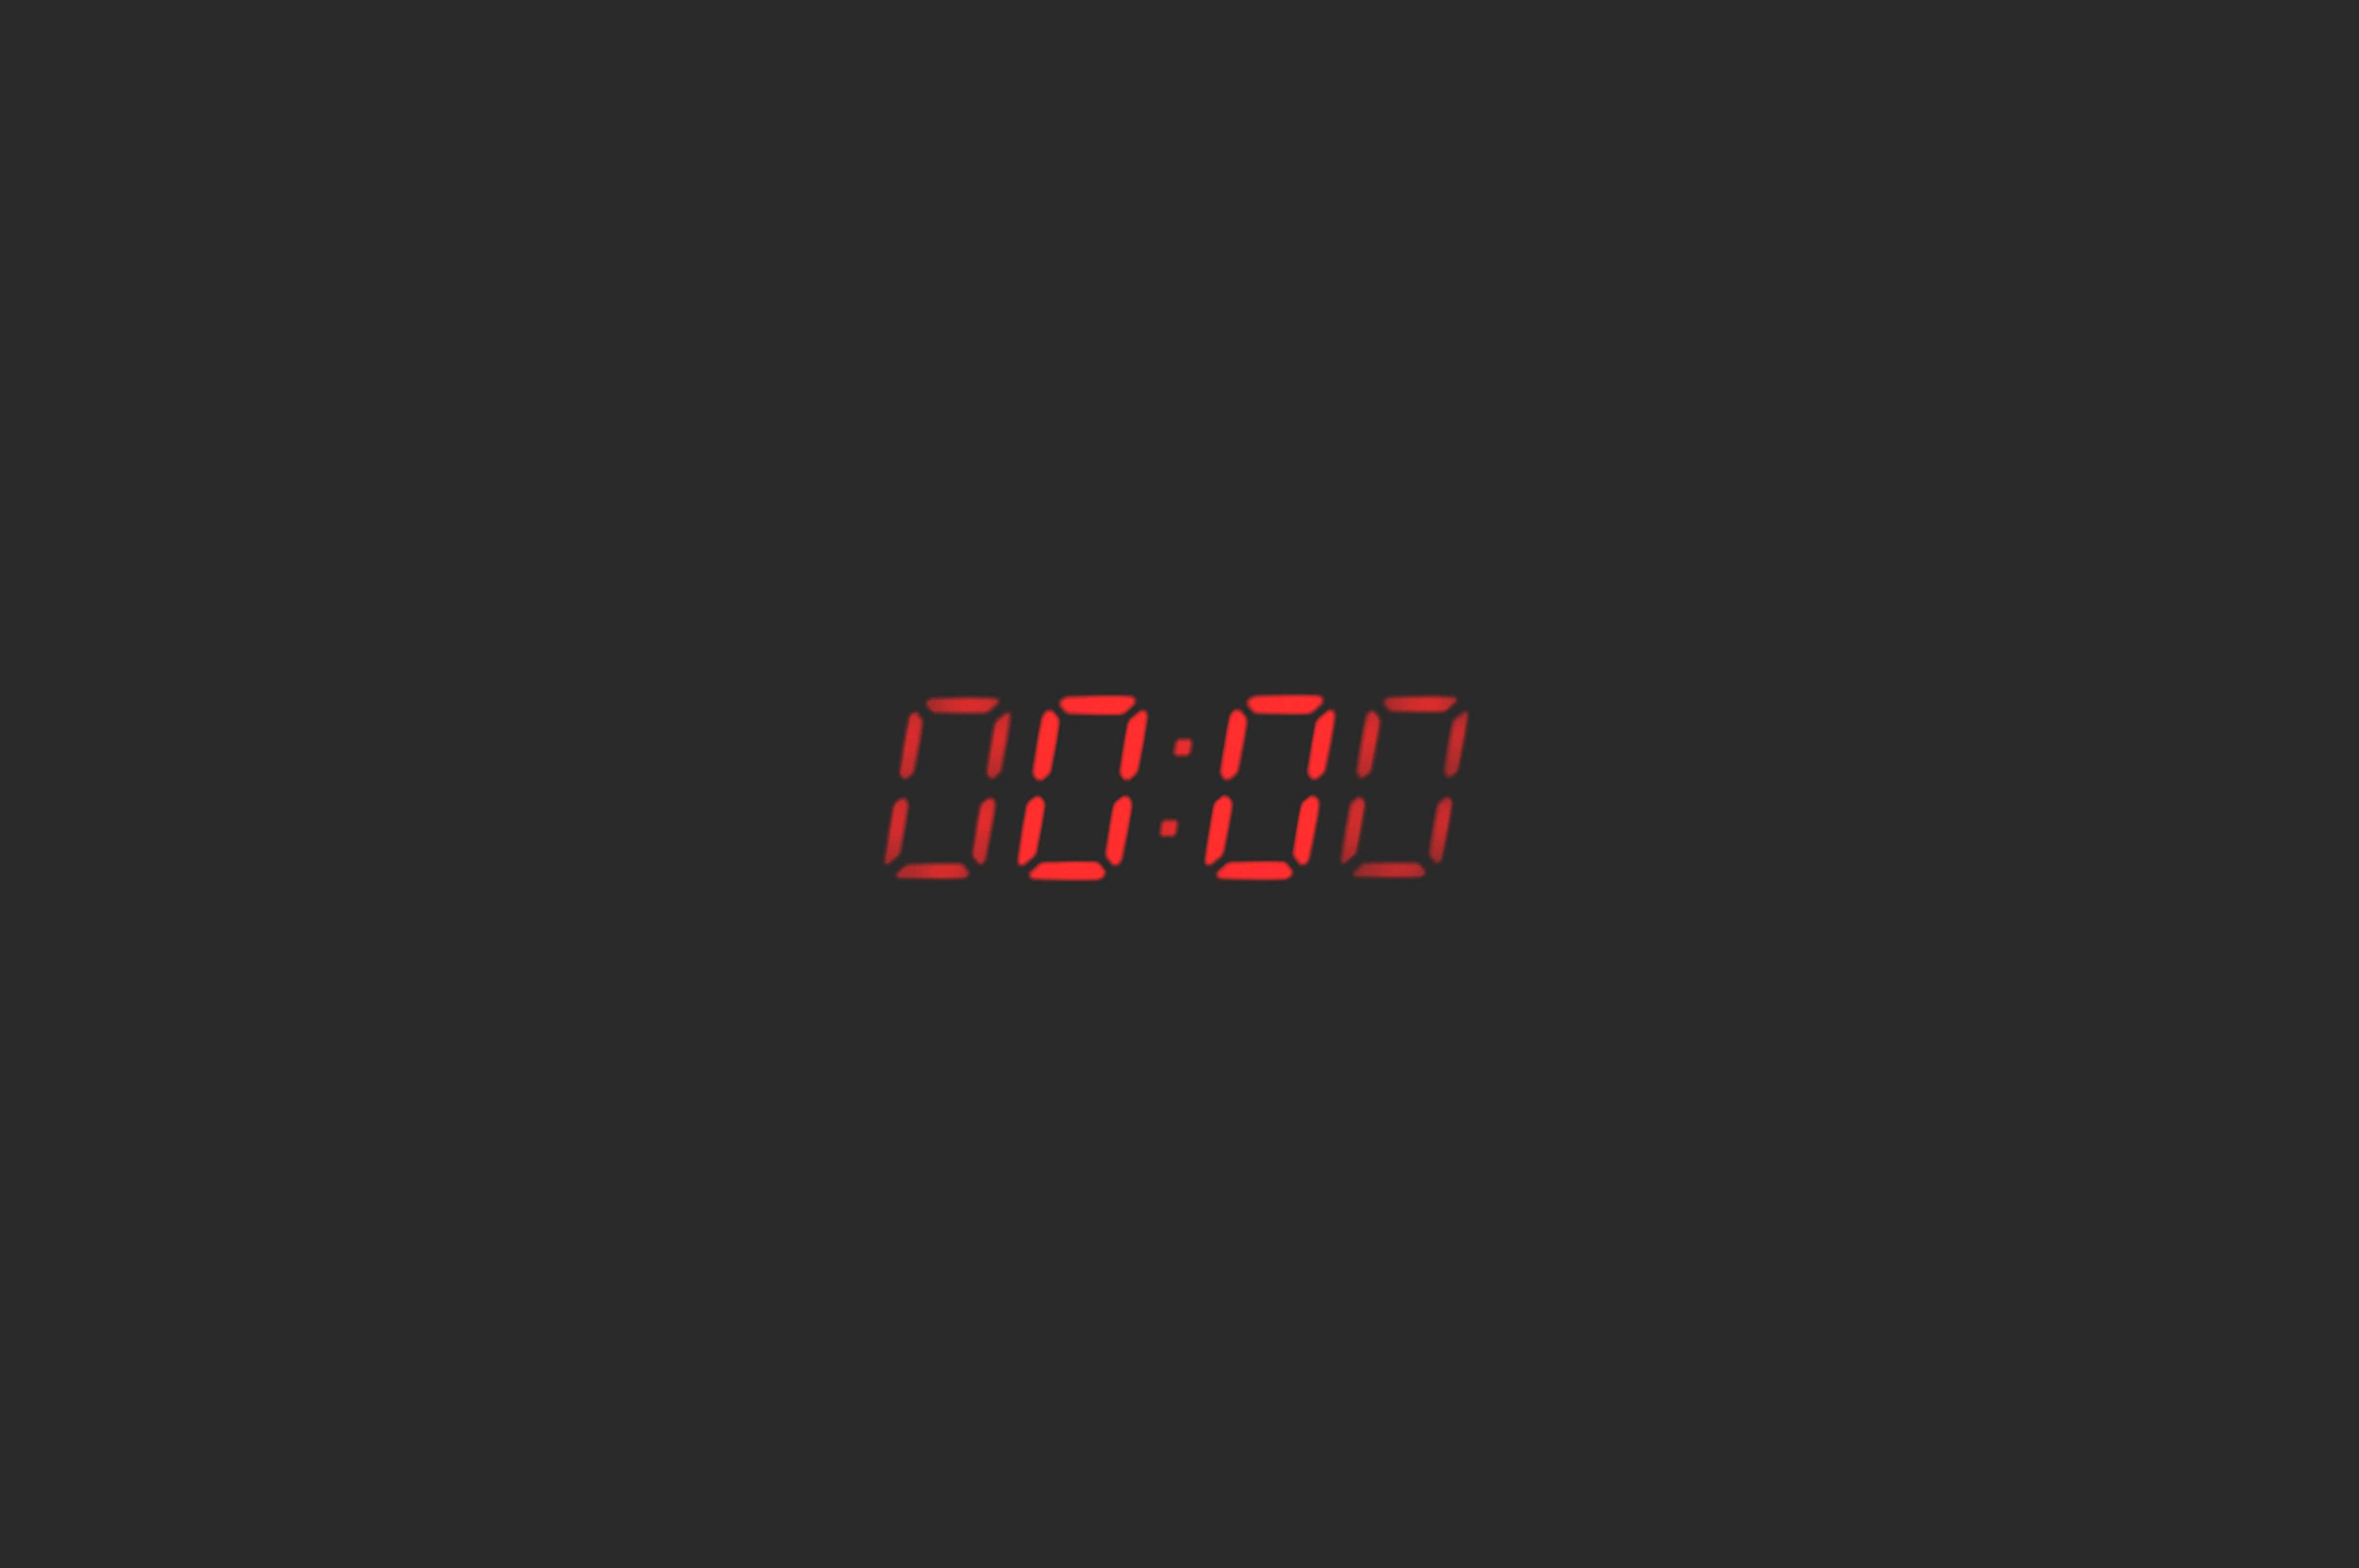 4k Wallpaper Clock Countdown Cool